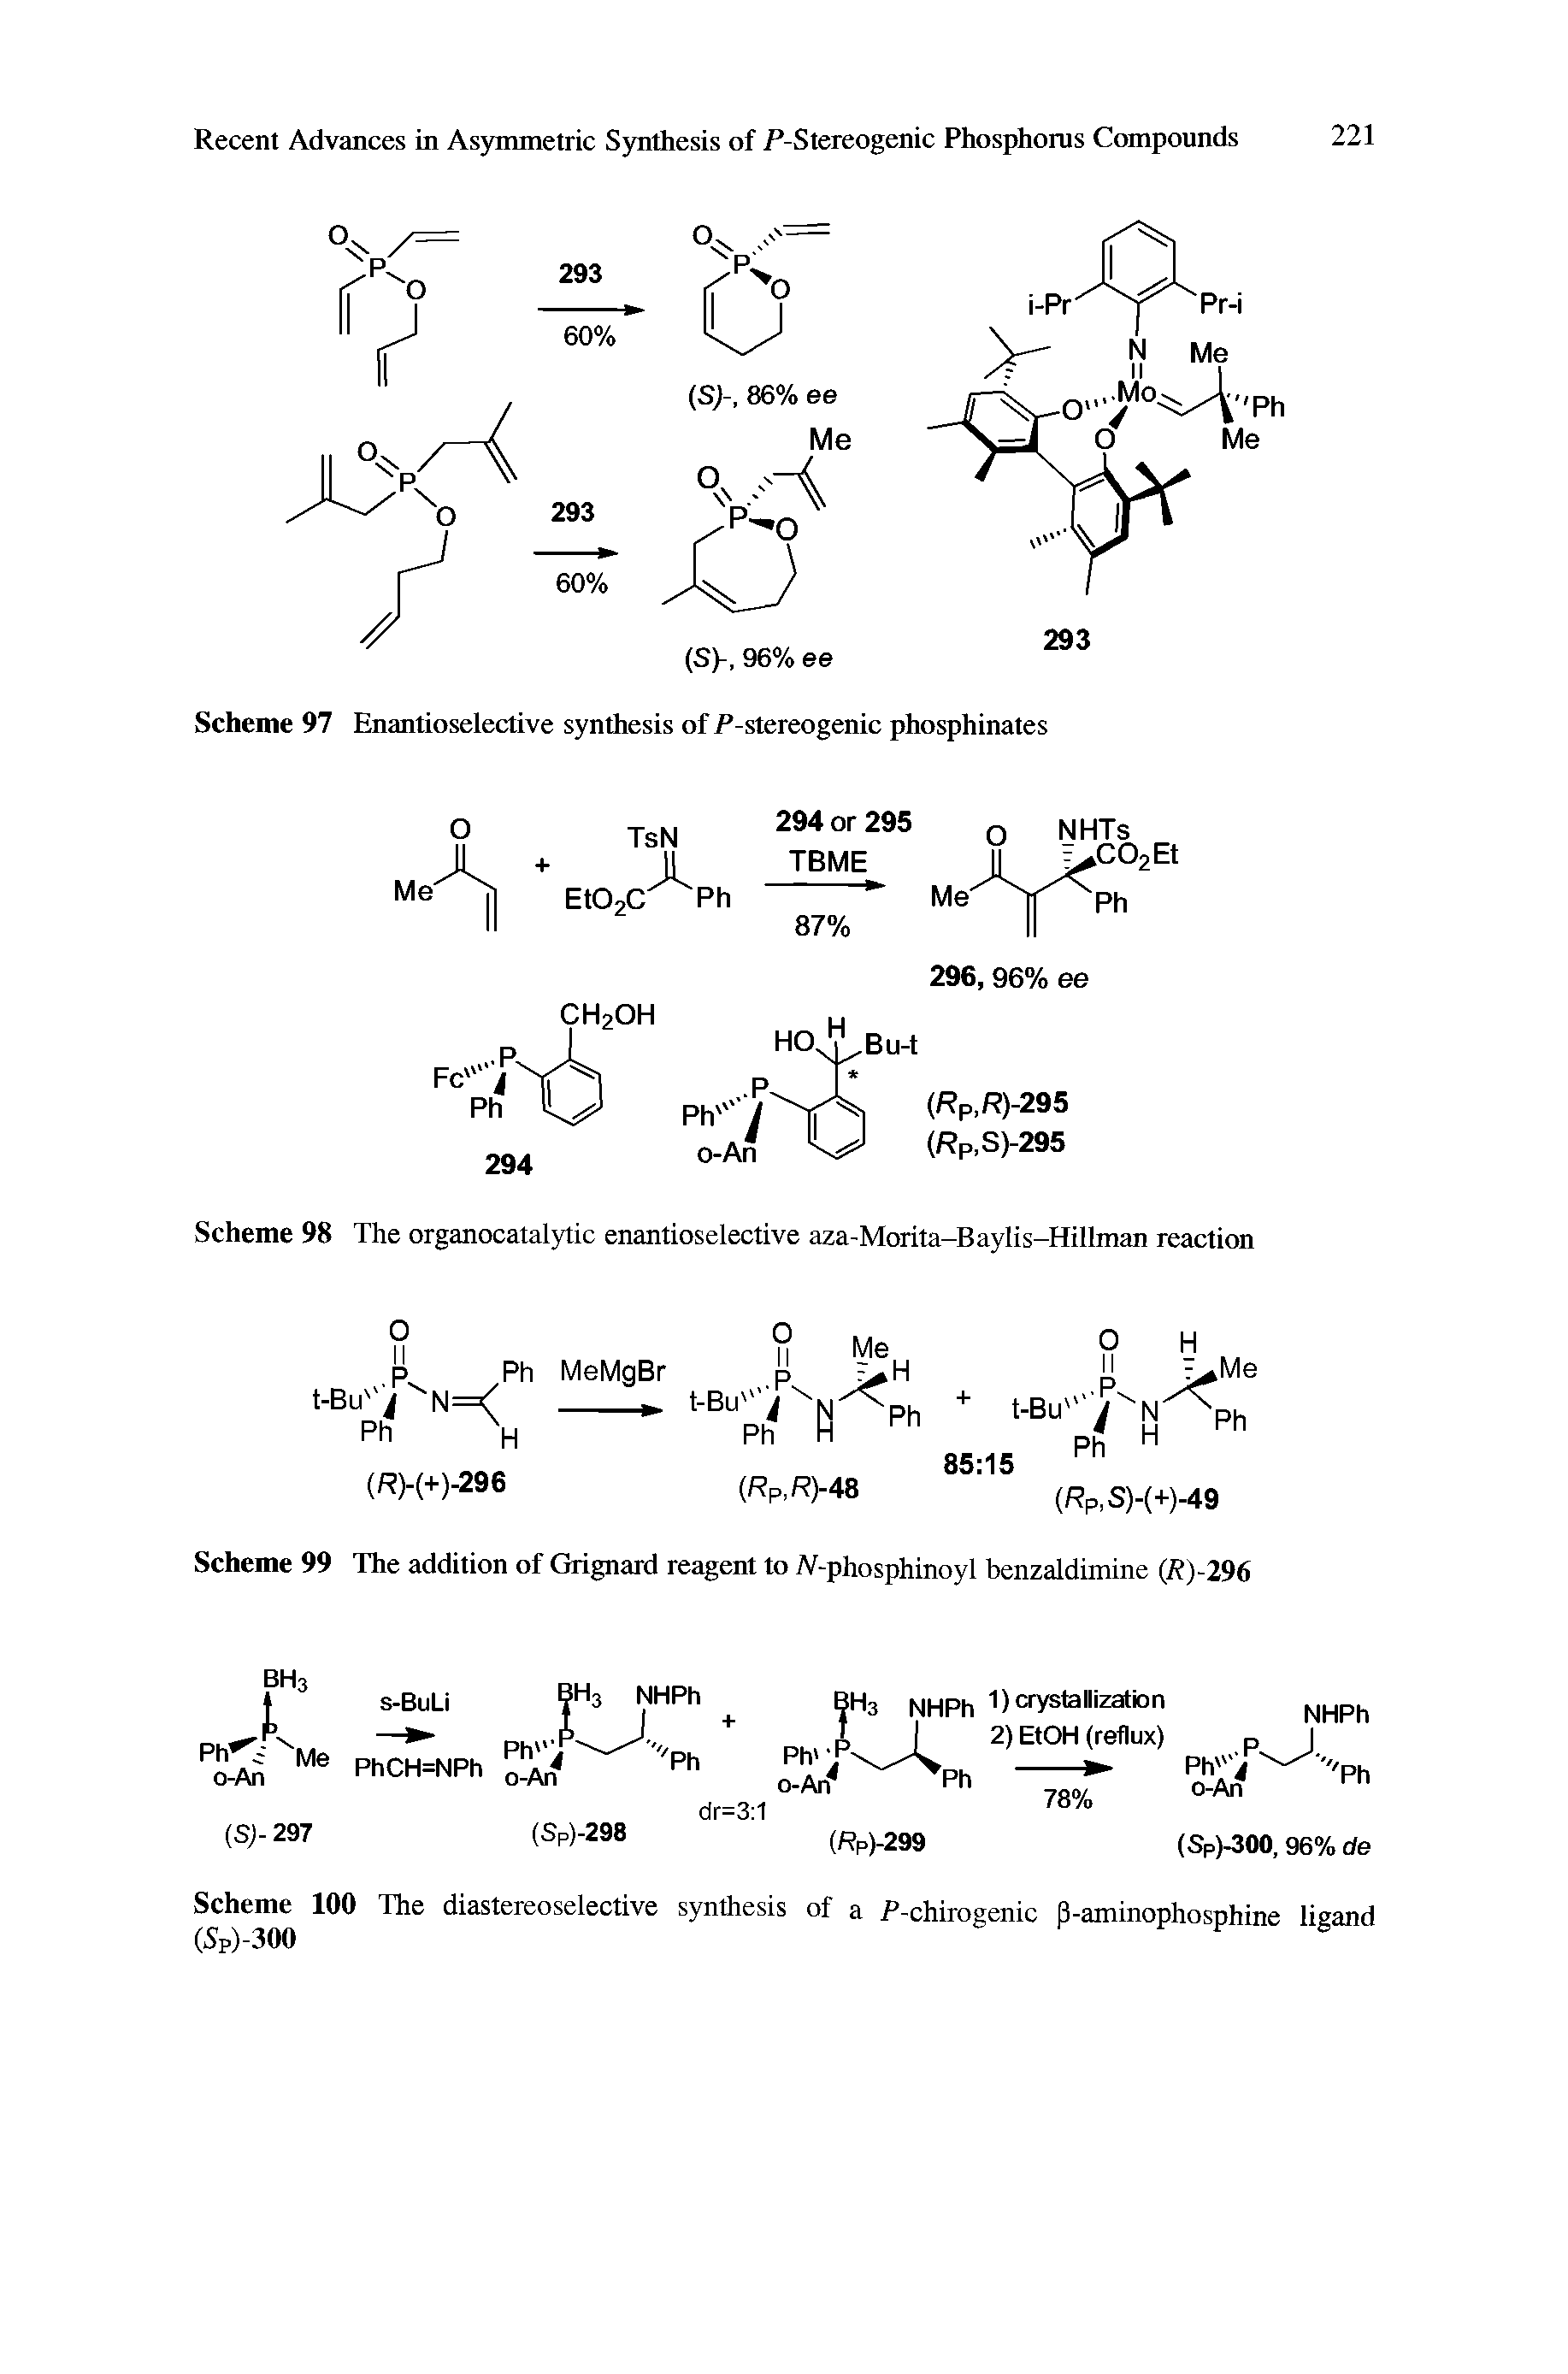 Scheme 98 The organocatalytic enantioselective aza-Morita-Baylis-Hillman reaction O...